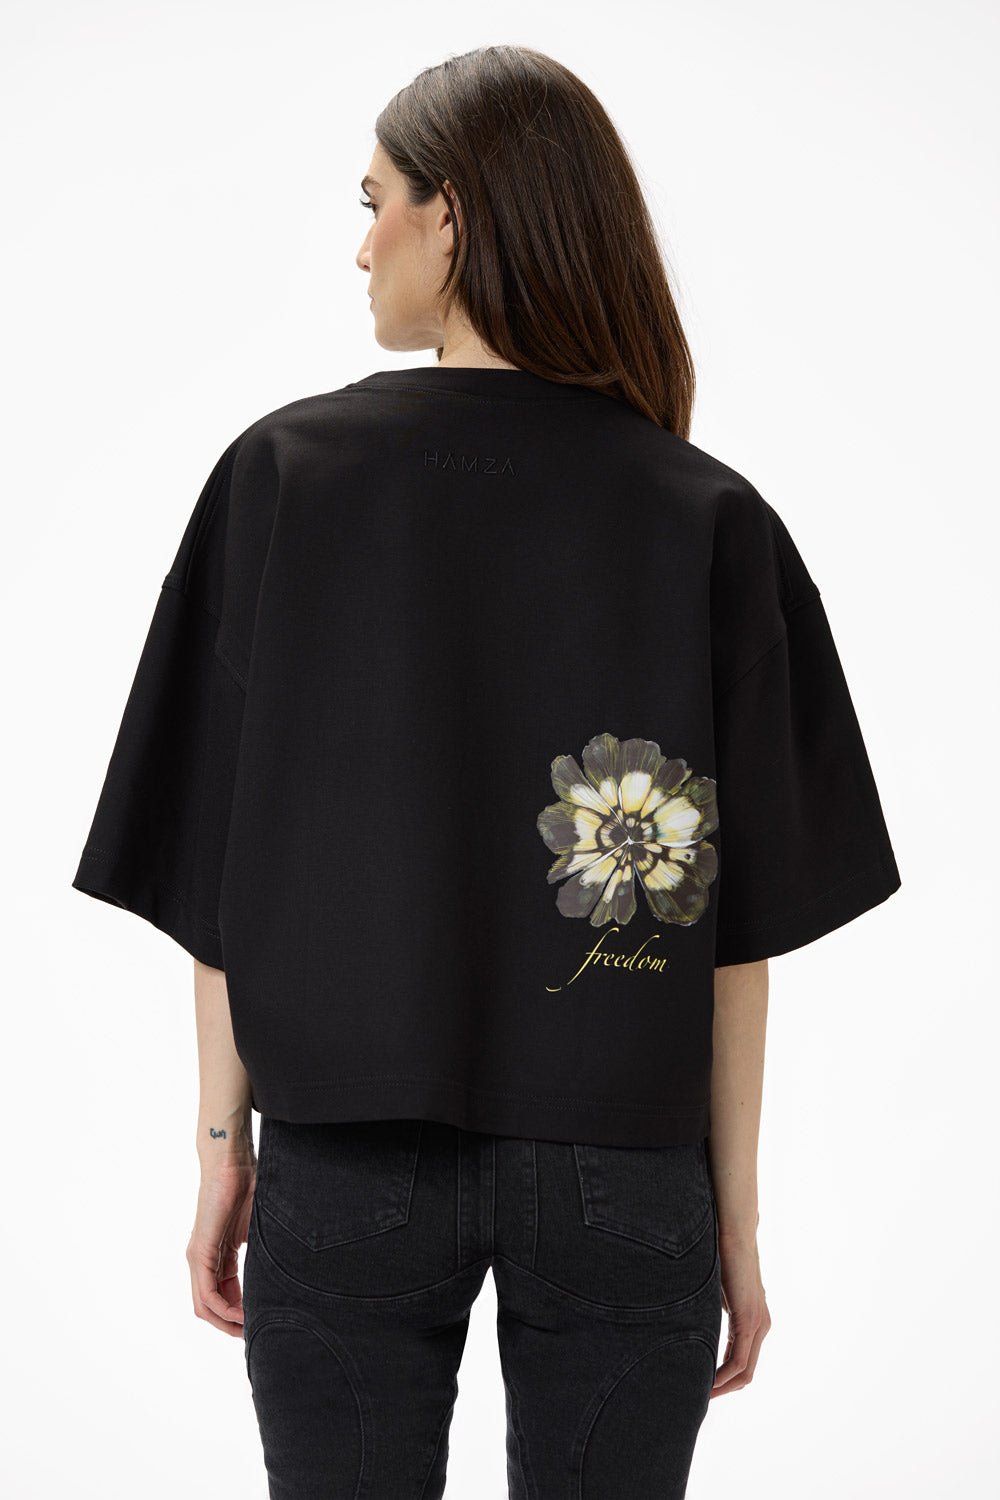 Tricou damă, negru, imprimeu floral Blossom, viscoză premium, croială supradimensionată, detaliu elegant (mâneci largi).